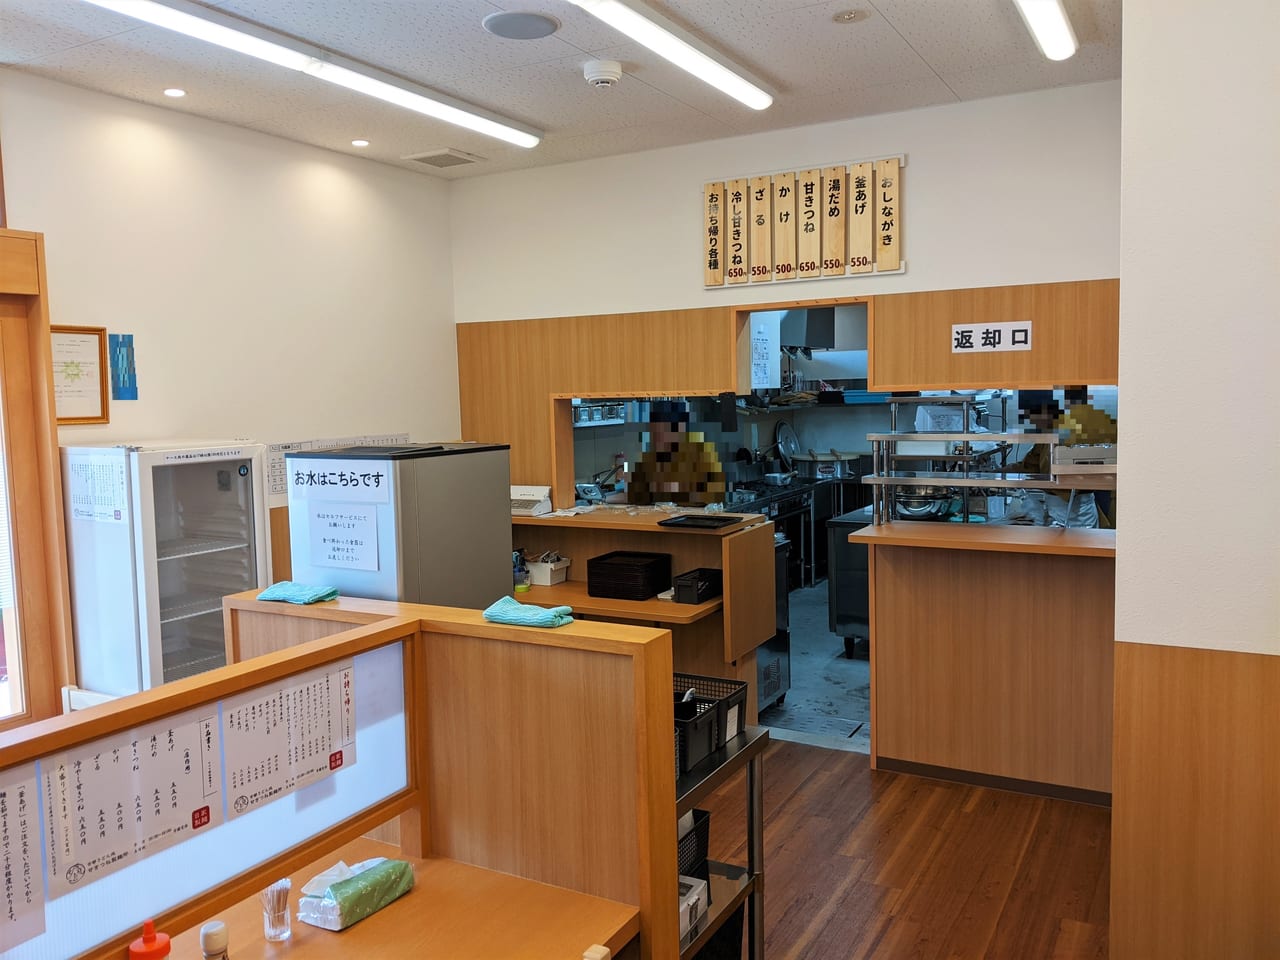 「京都うどん処甘きつね製麺所」の店内